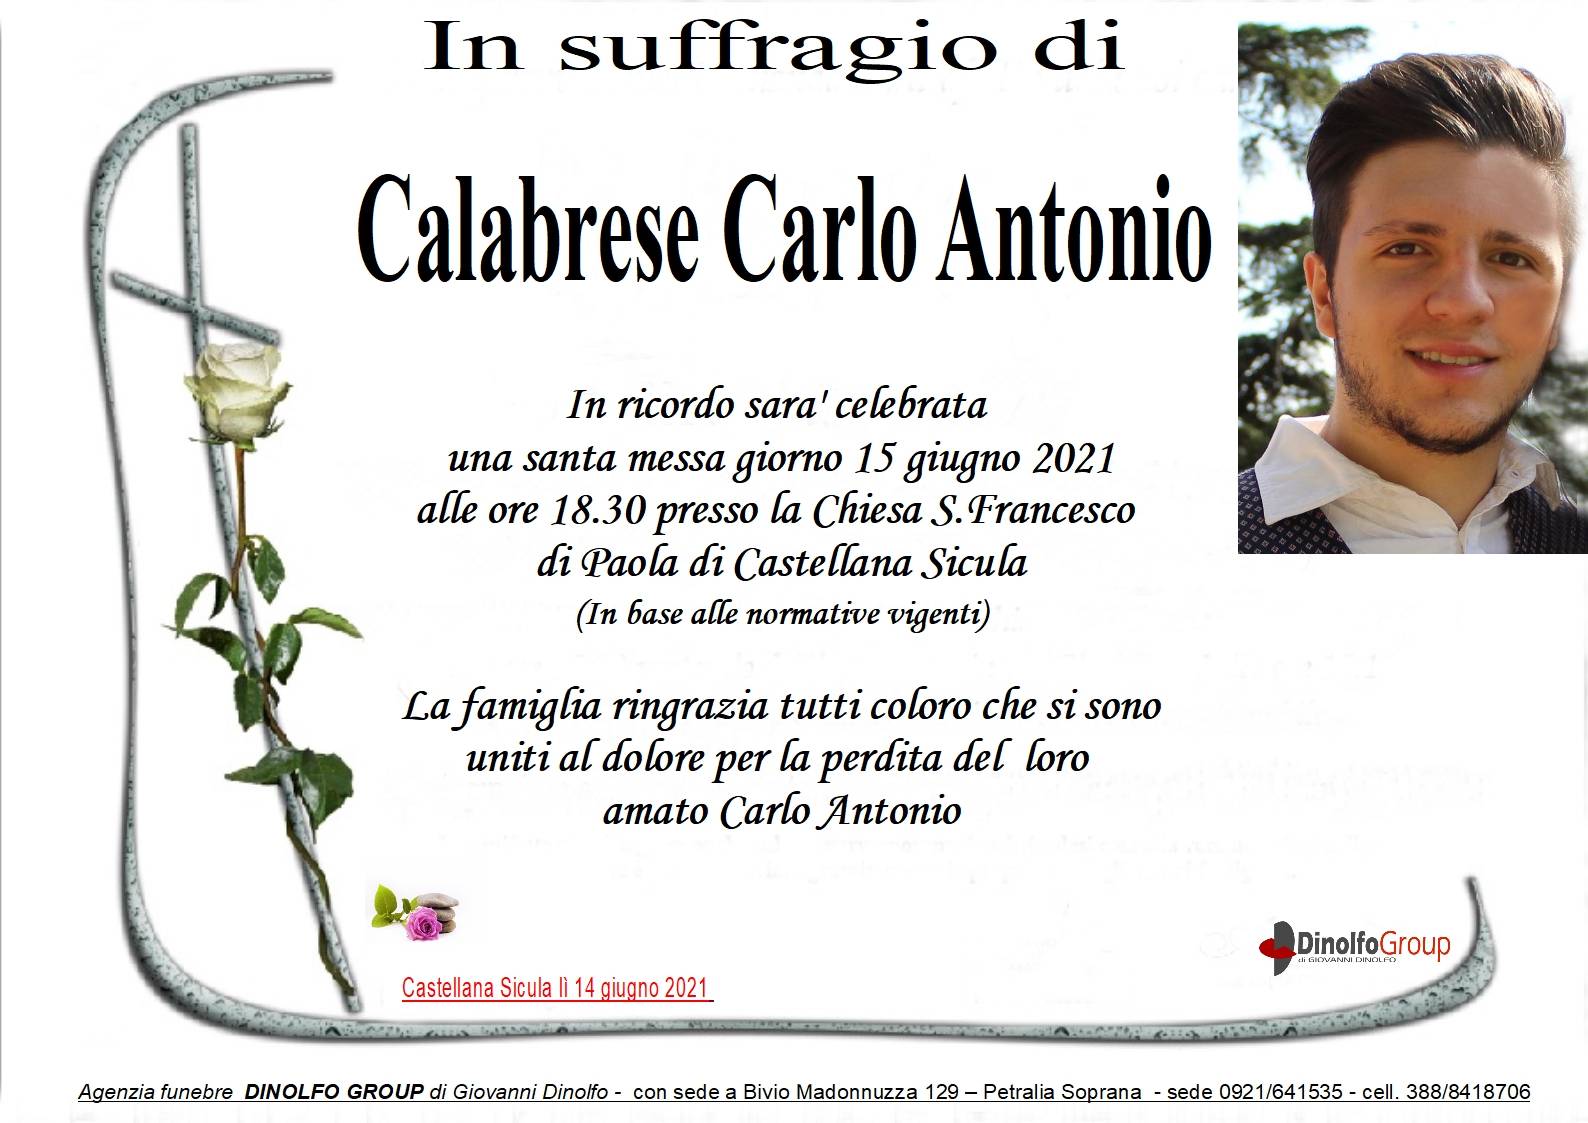 Carlo Antonio Calabrese